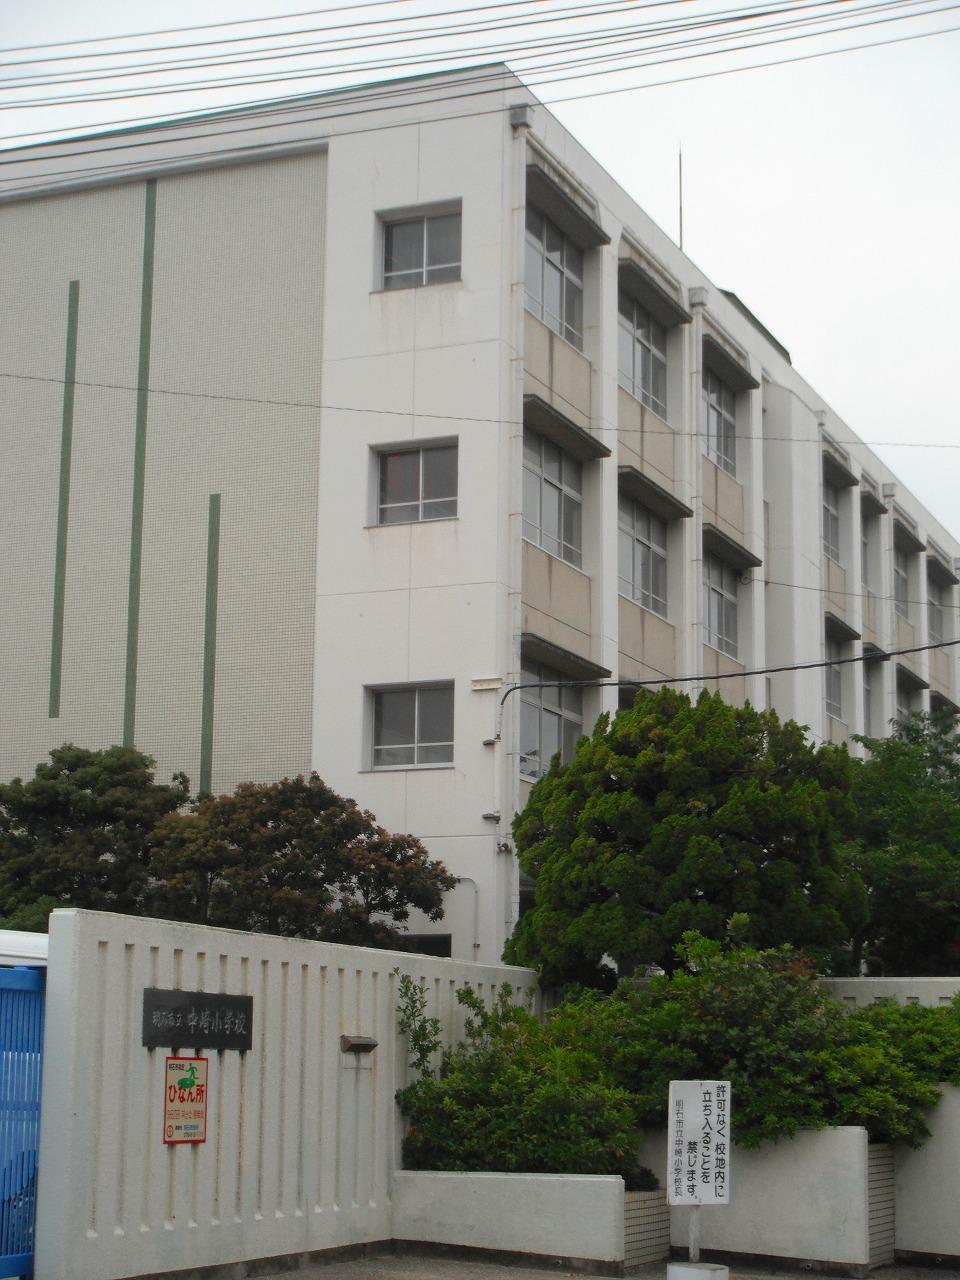 Primary school. Nakazaki until elementary school 776m